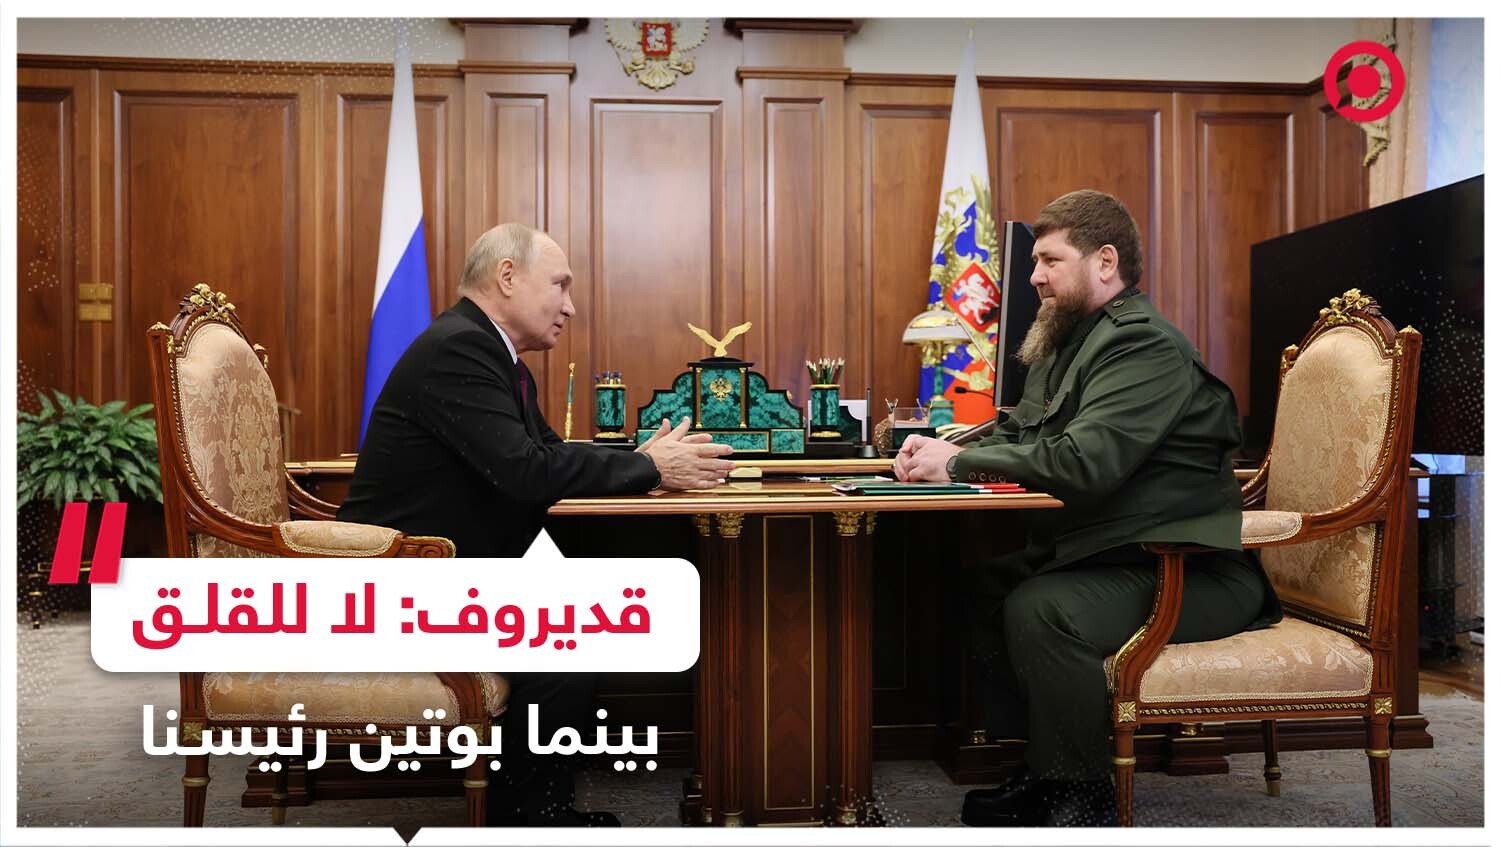 قديروف: لا داعي للقلق بينما بوتين رئيسنا